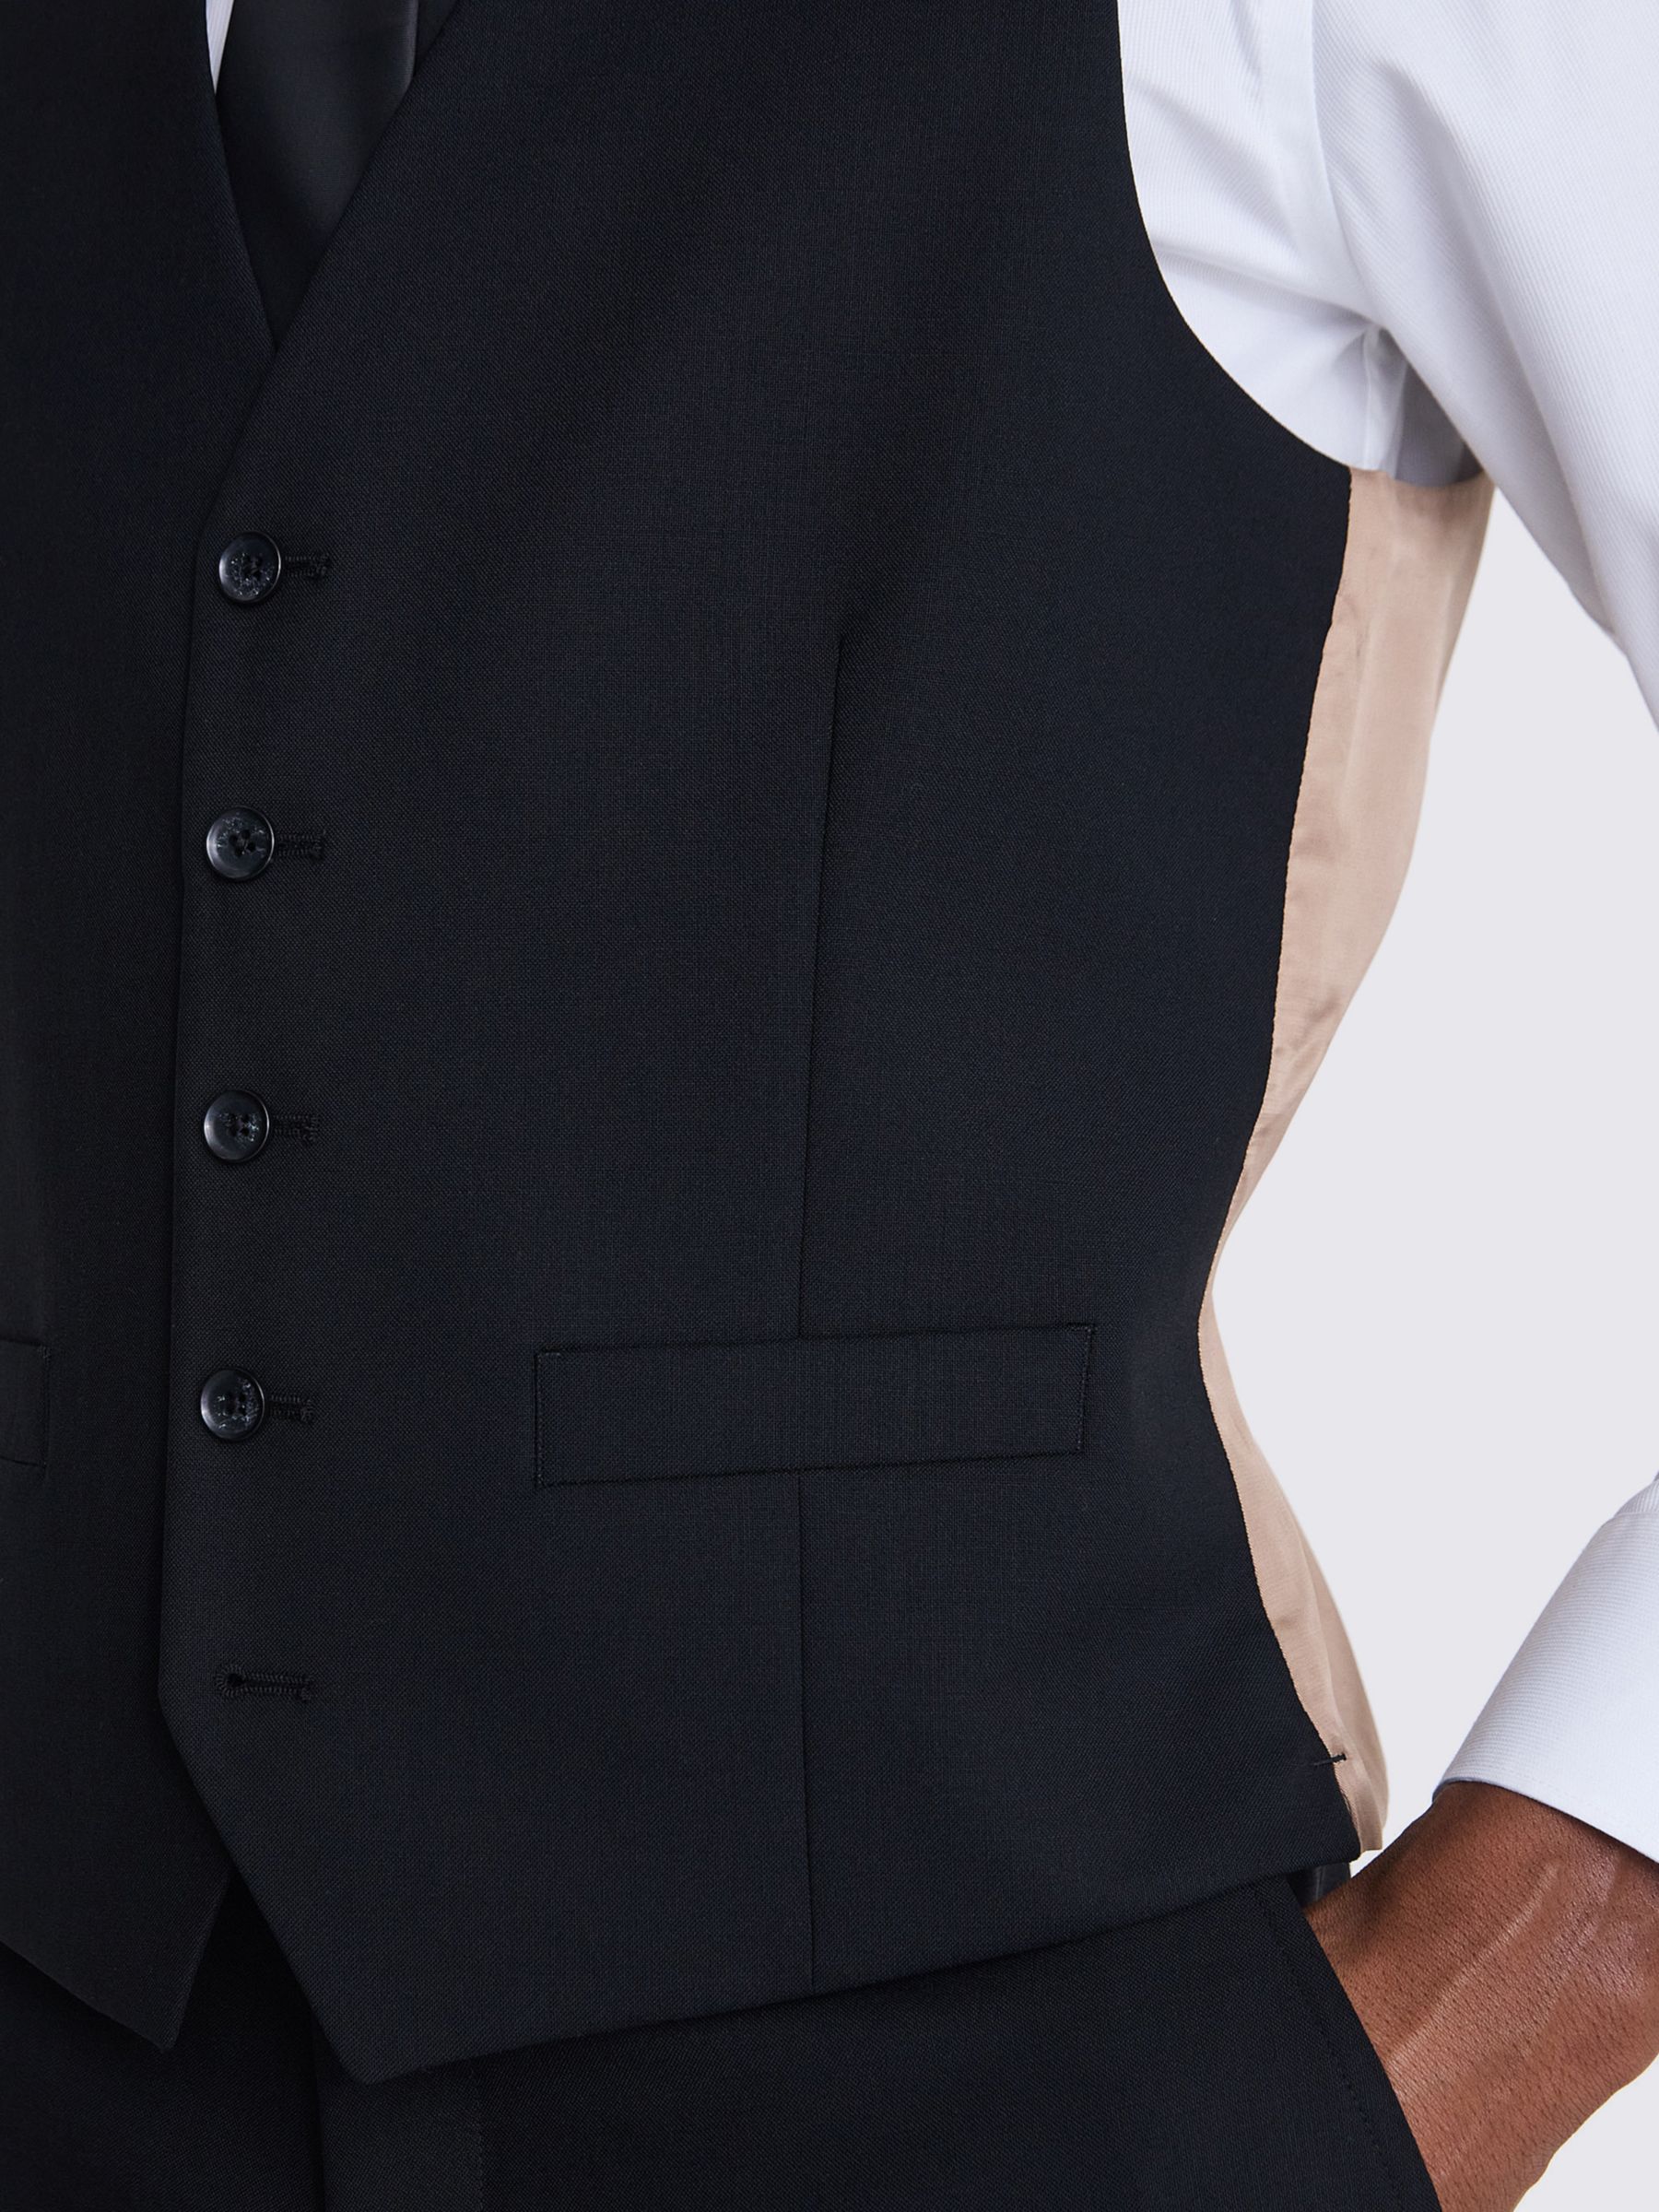 Moss x Barberis Italian Tailored Fit Half Lined Waistcoat, Black, 36R